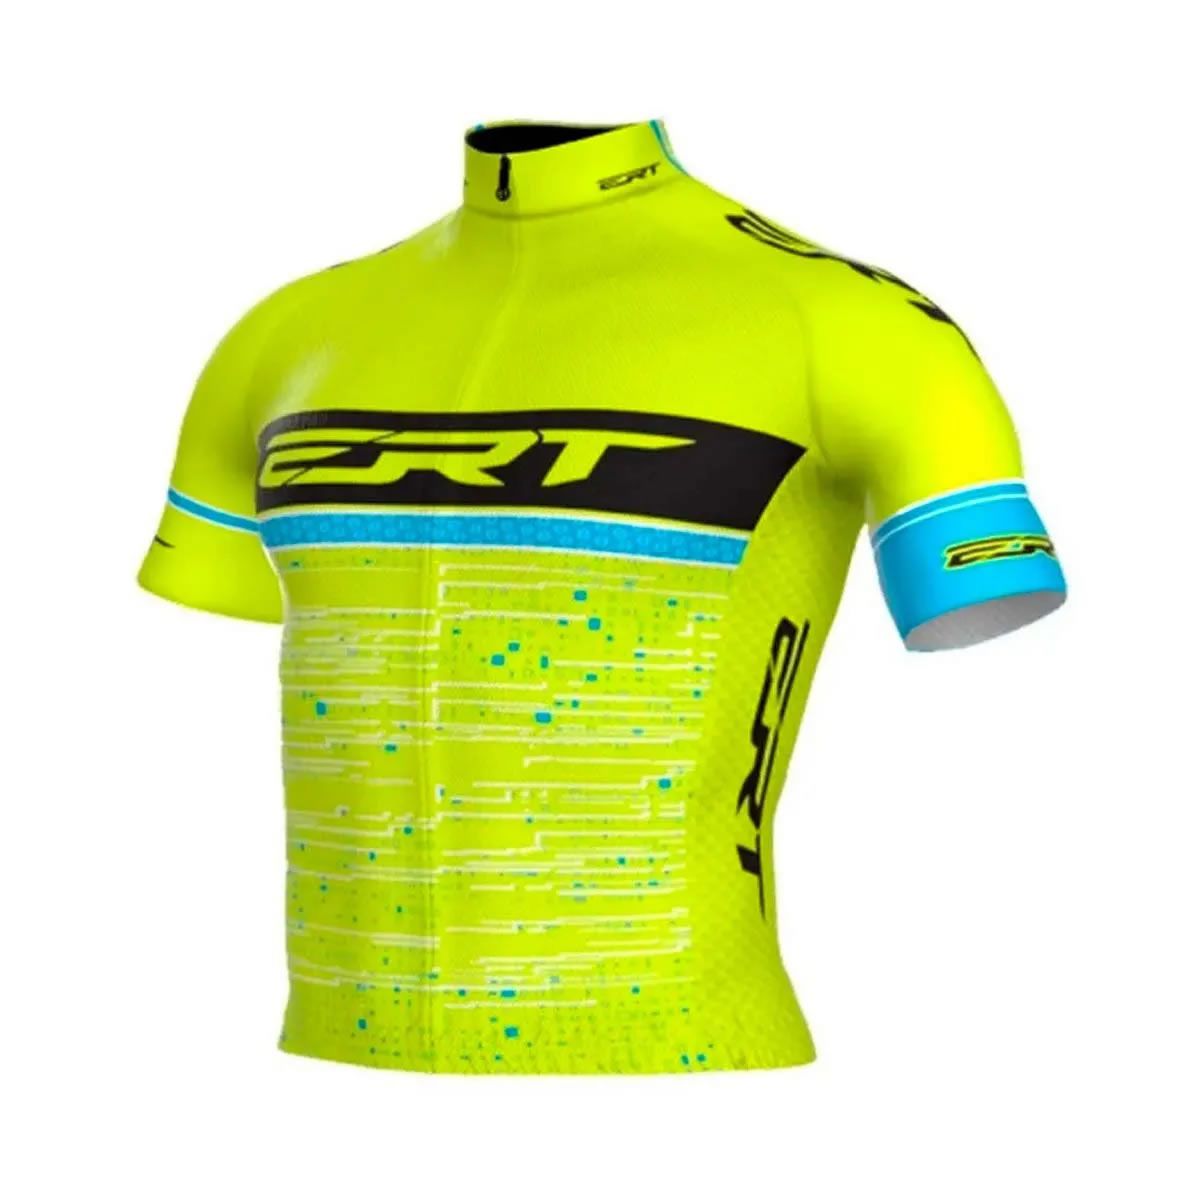 Camisa ciclismo ERT Elite Cycling Team slim fit unissex - 4Bike Shop -  Roupas para ciclismo, acessórios e muito mais